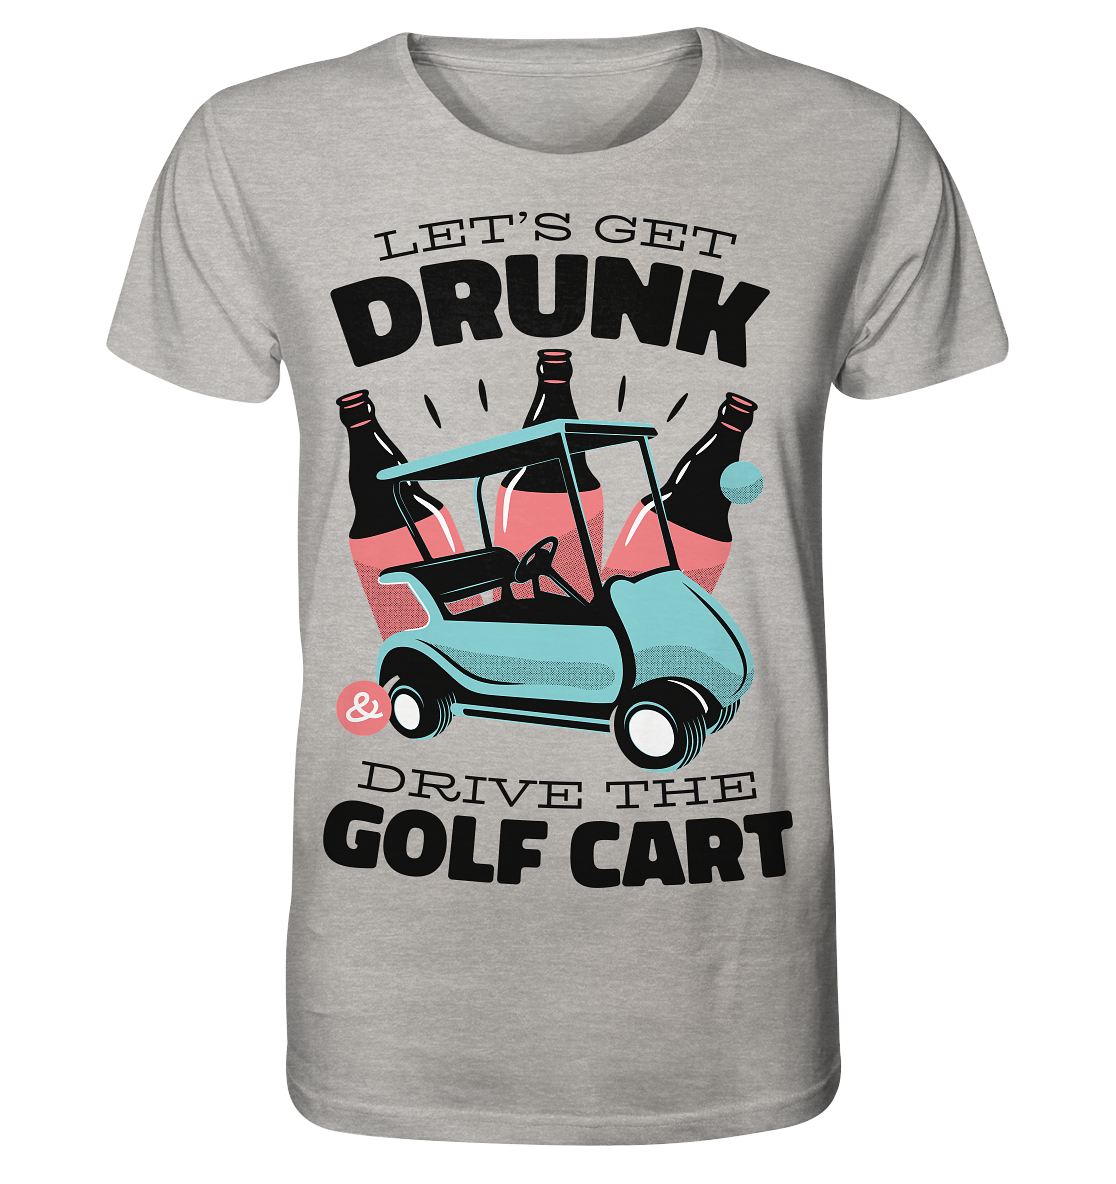 Let's get drunk drive the golf cart - Organic Shirt (mottled)